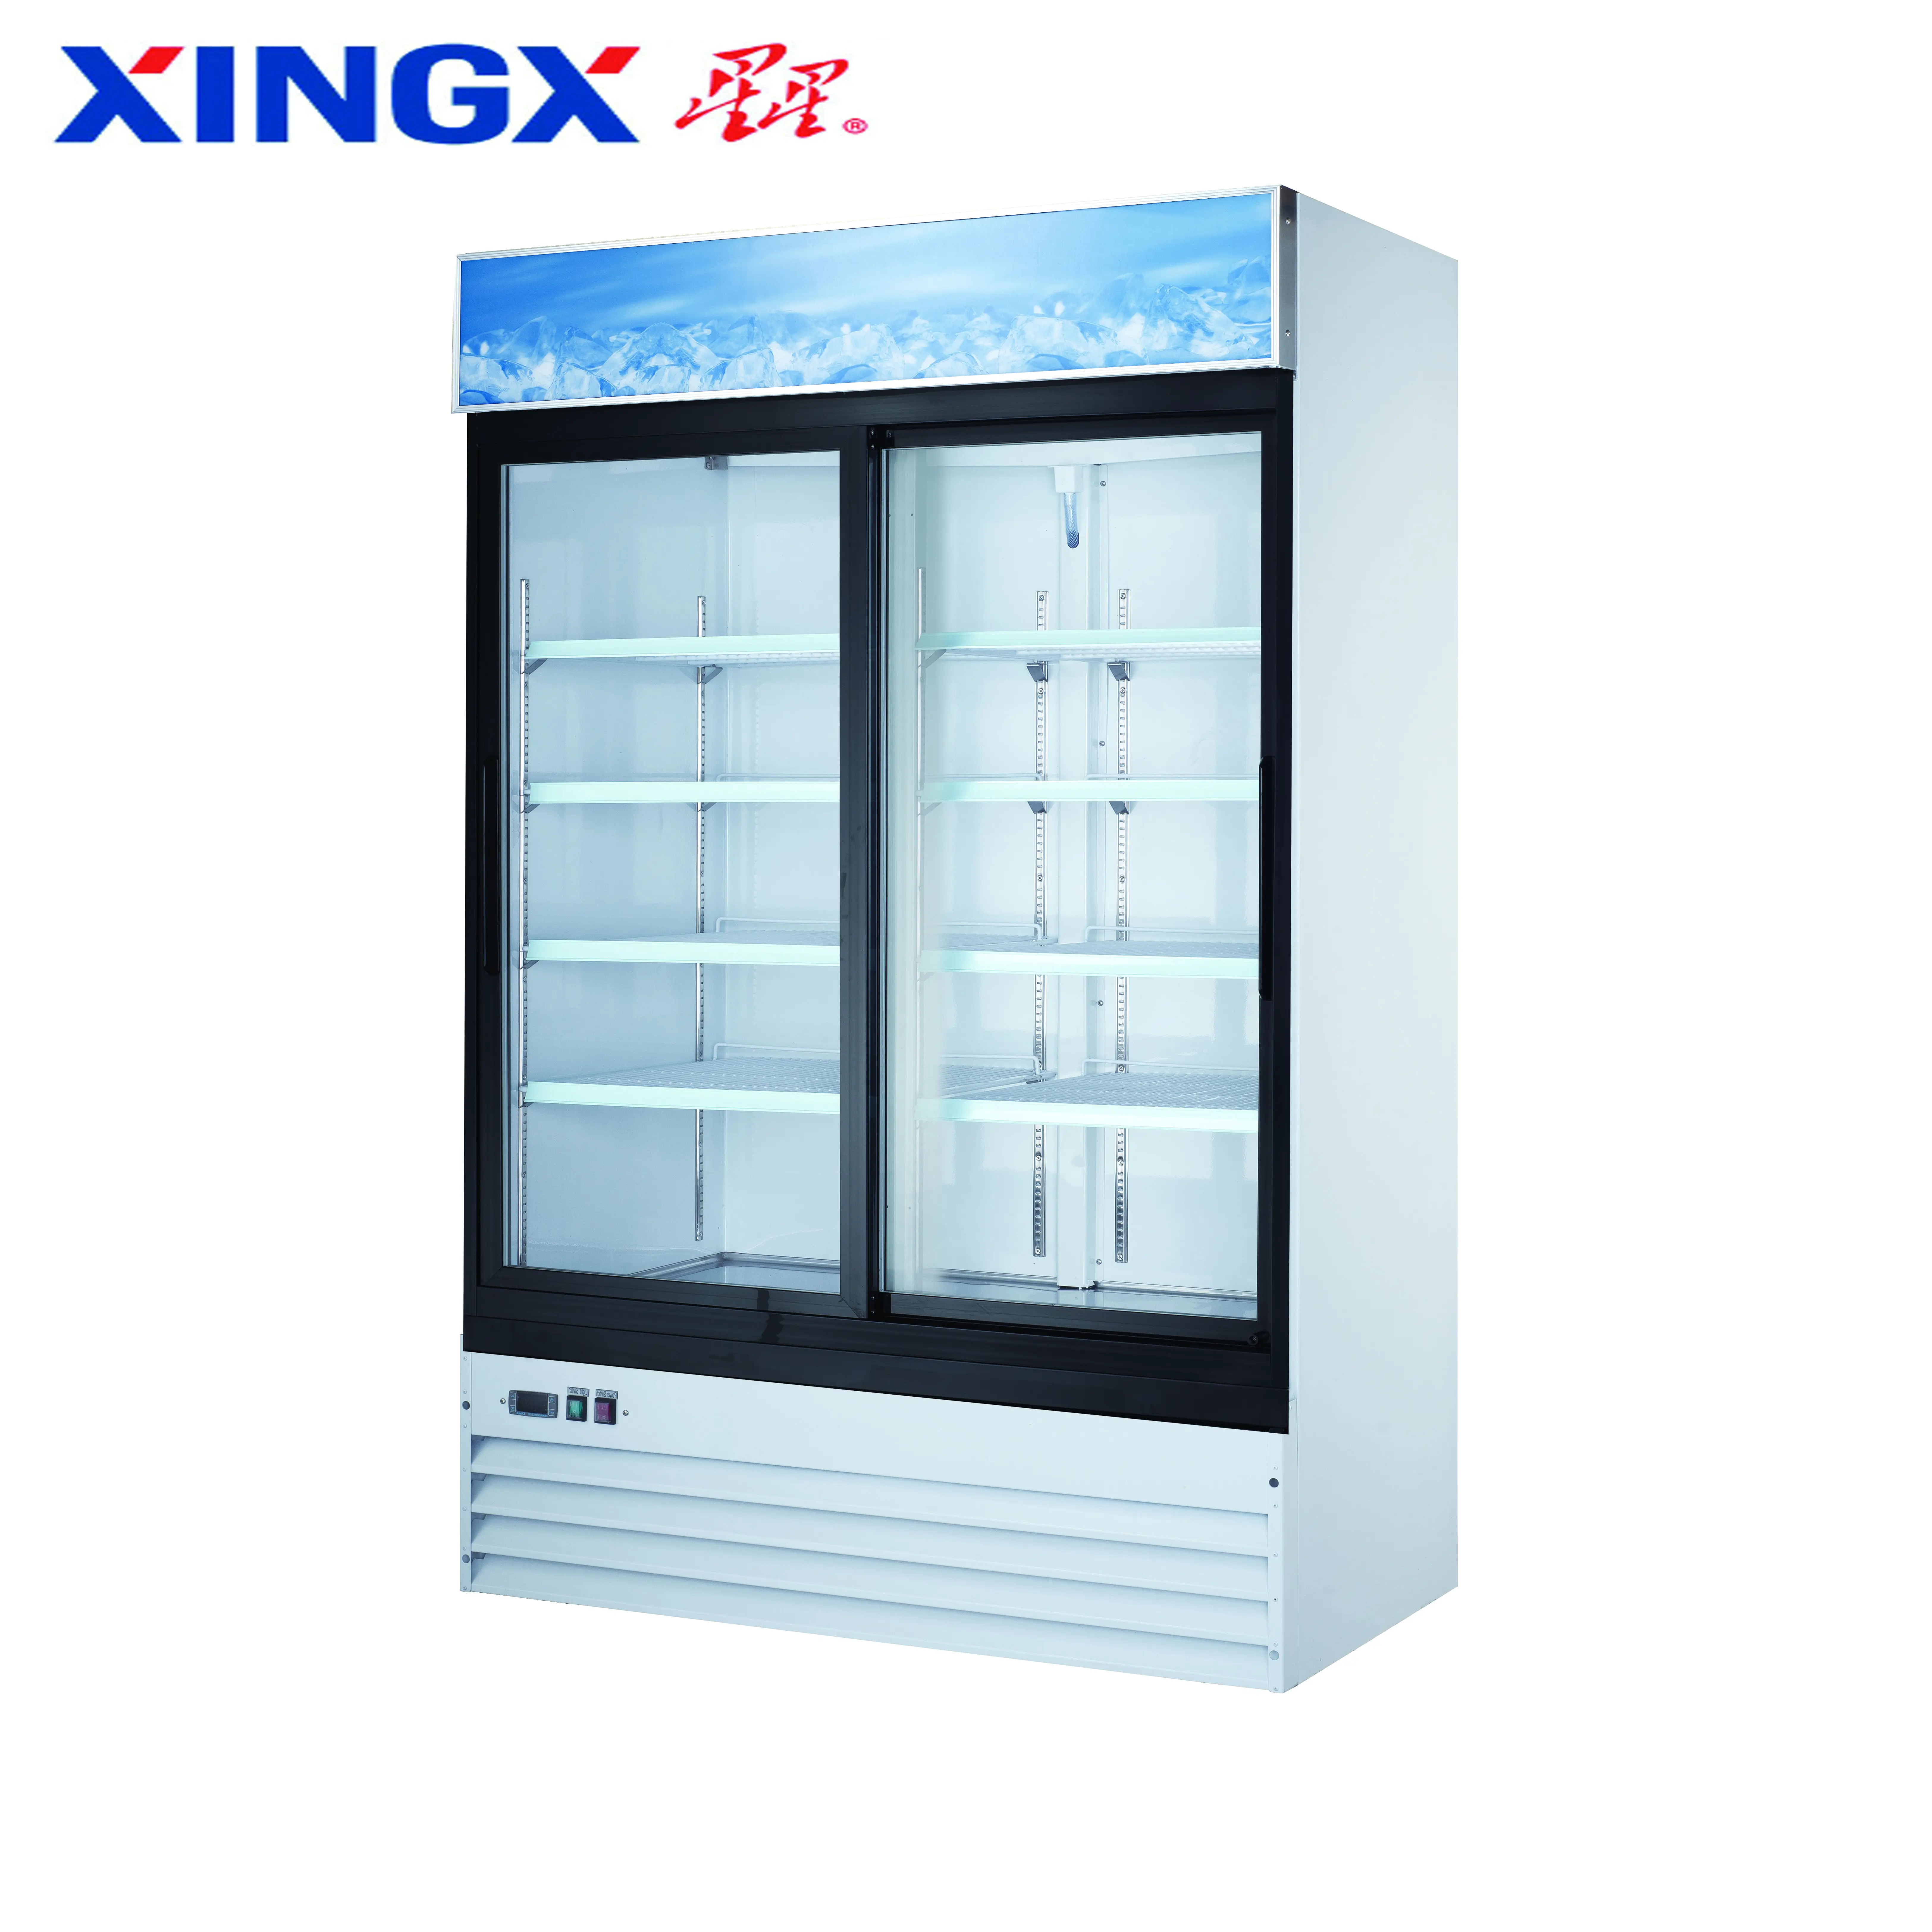 2ガラスドア業務用冷蔵庫、ボトルディスプレイshowcase_G1.2YBM2F-HC-Refrigeration機器